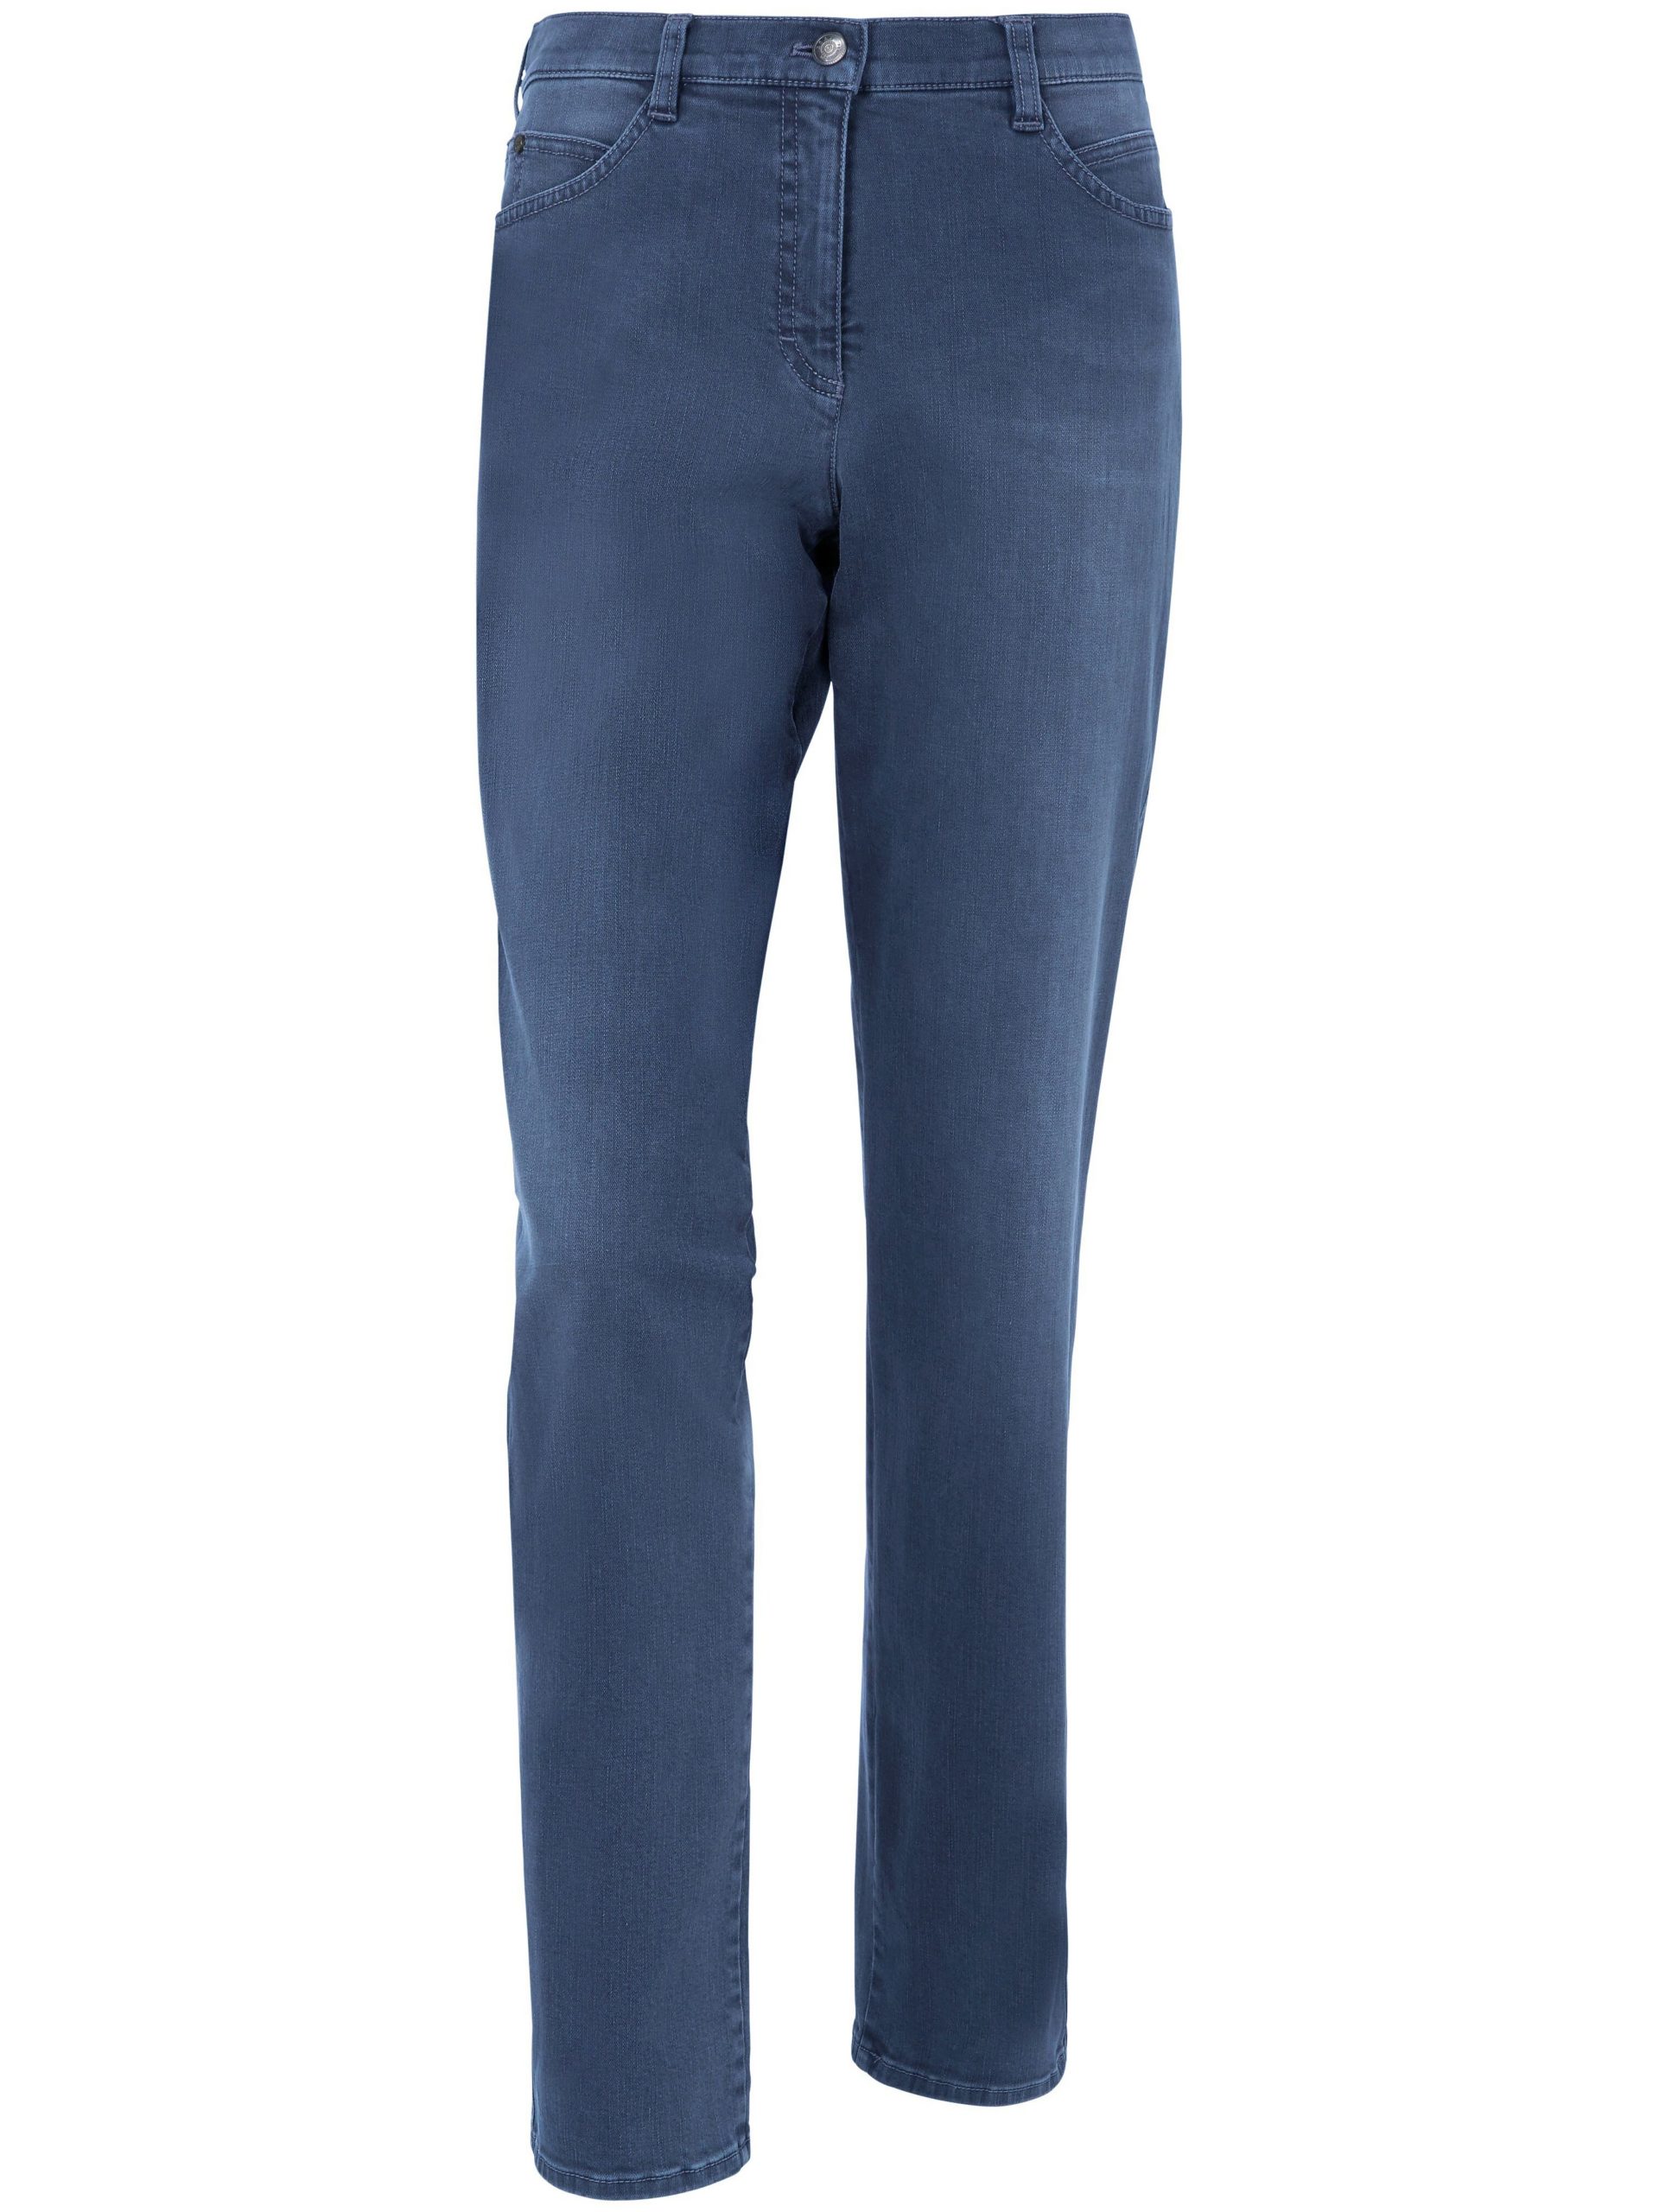 Jeans, model Nicola Van Brax Feel Good denim Kopen